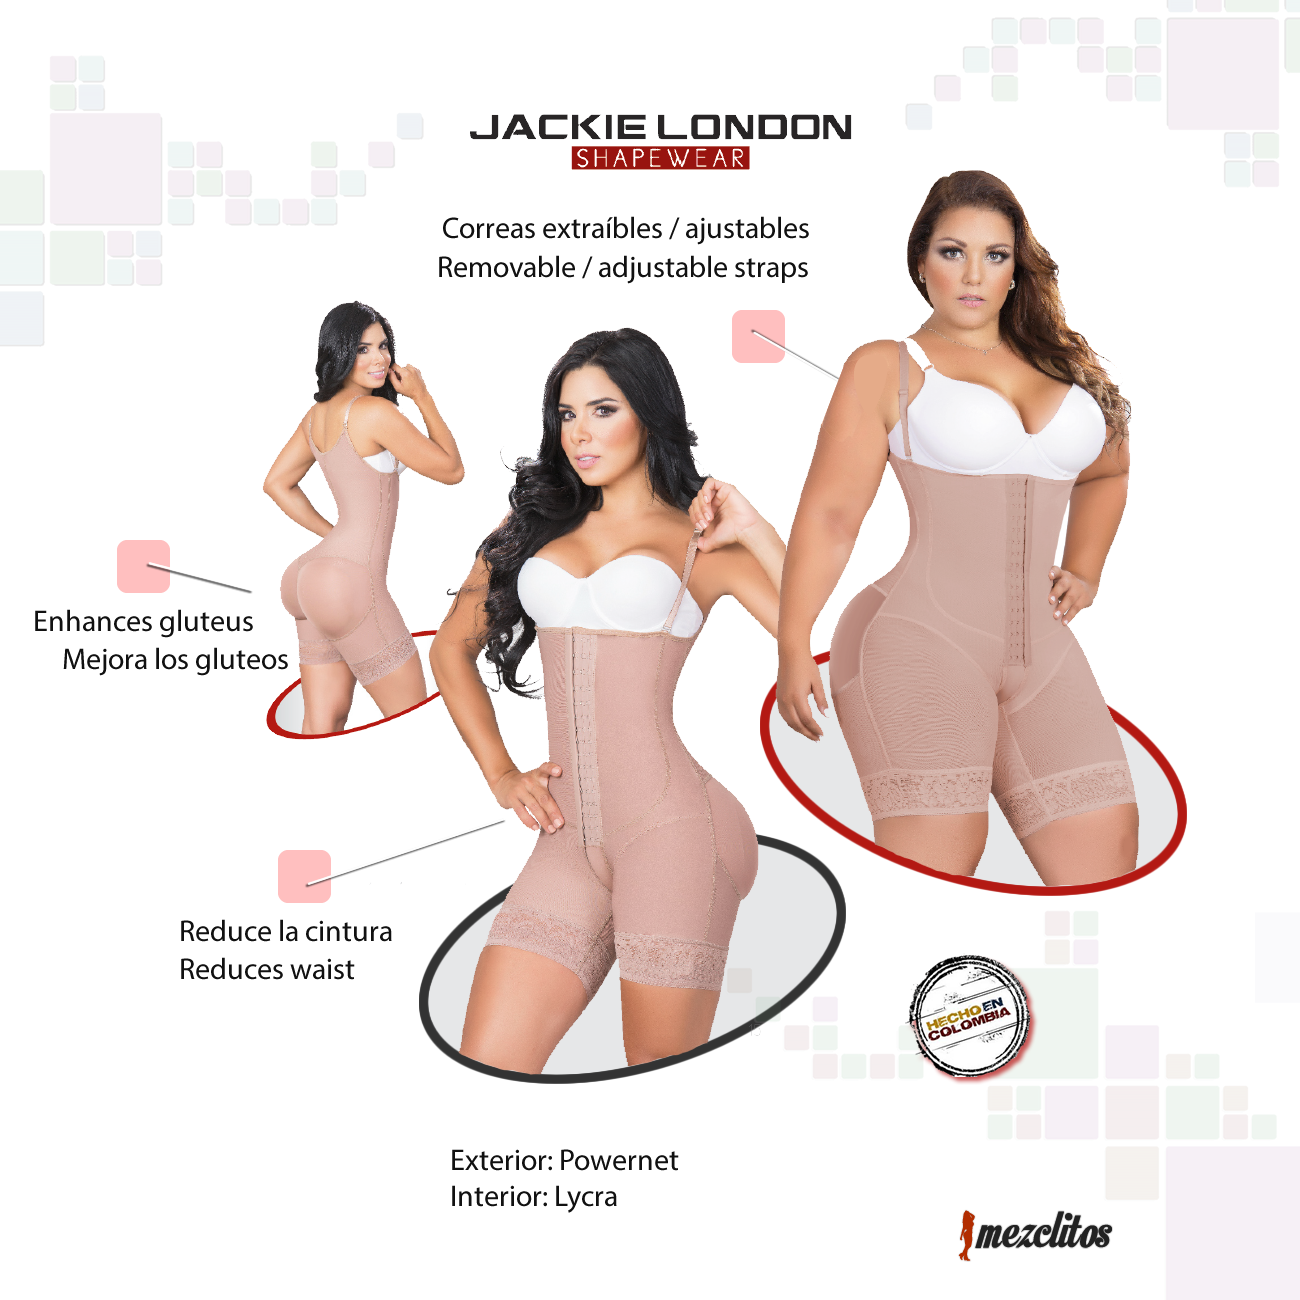 Jackie London Faja 1515 Extra Short - 100% Colombiano – Mezclitos